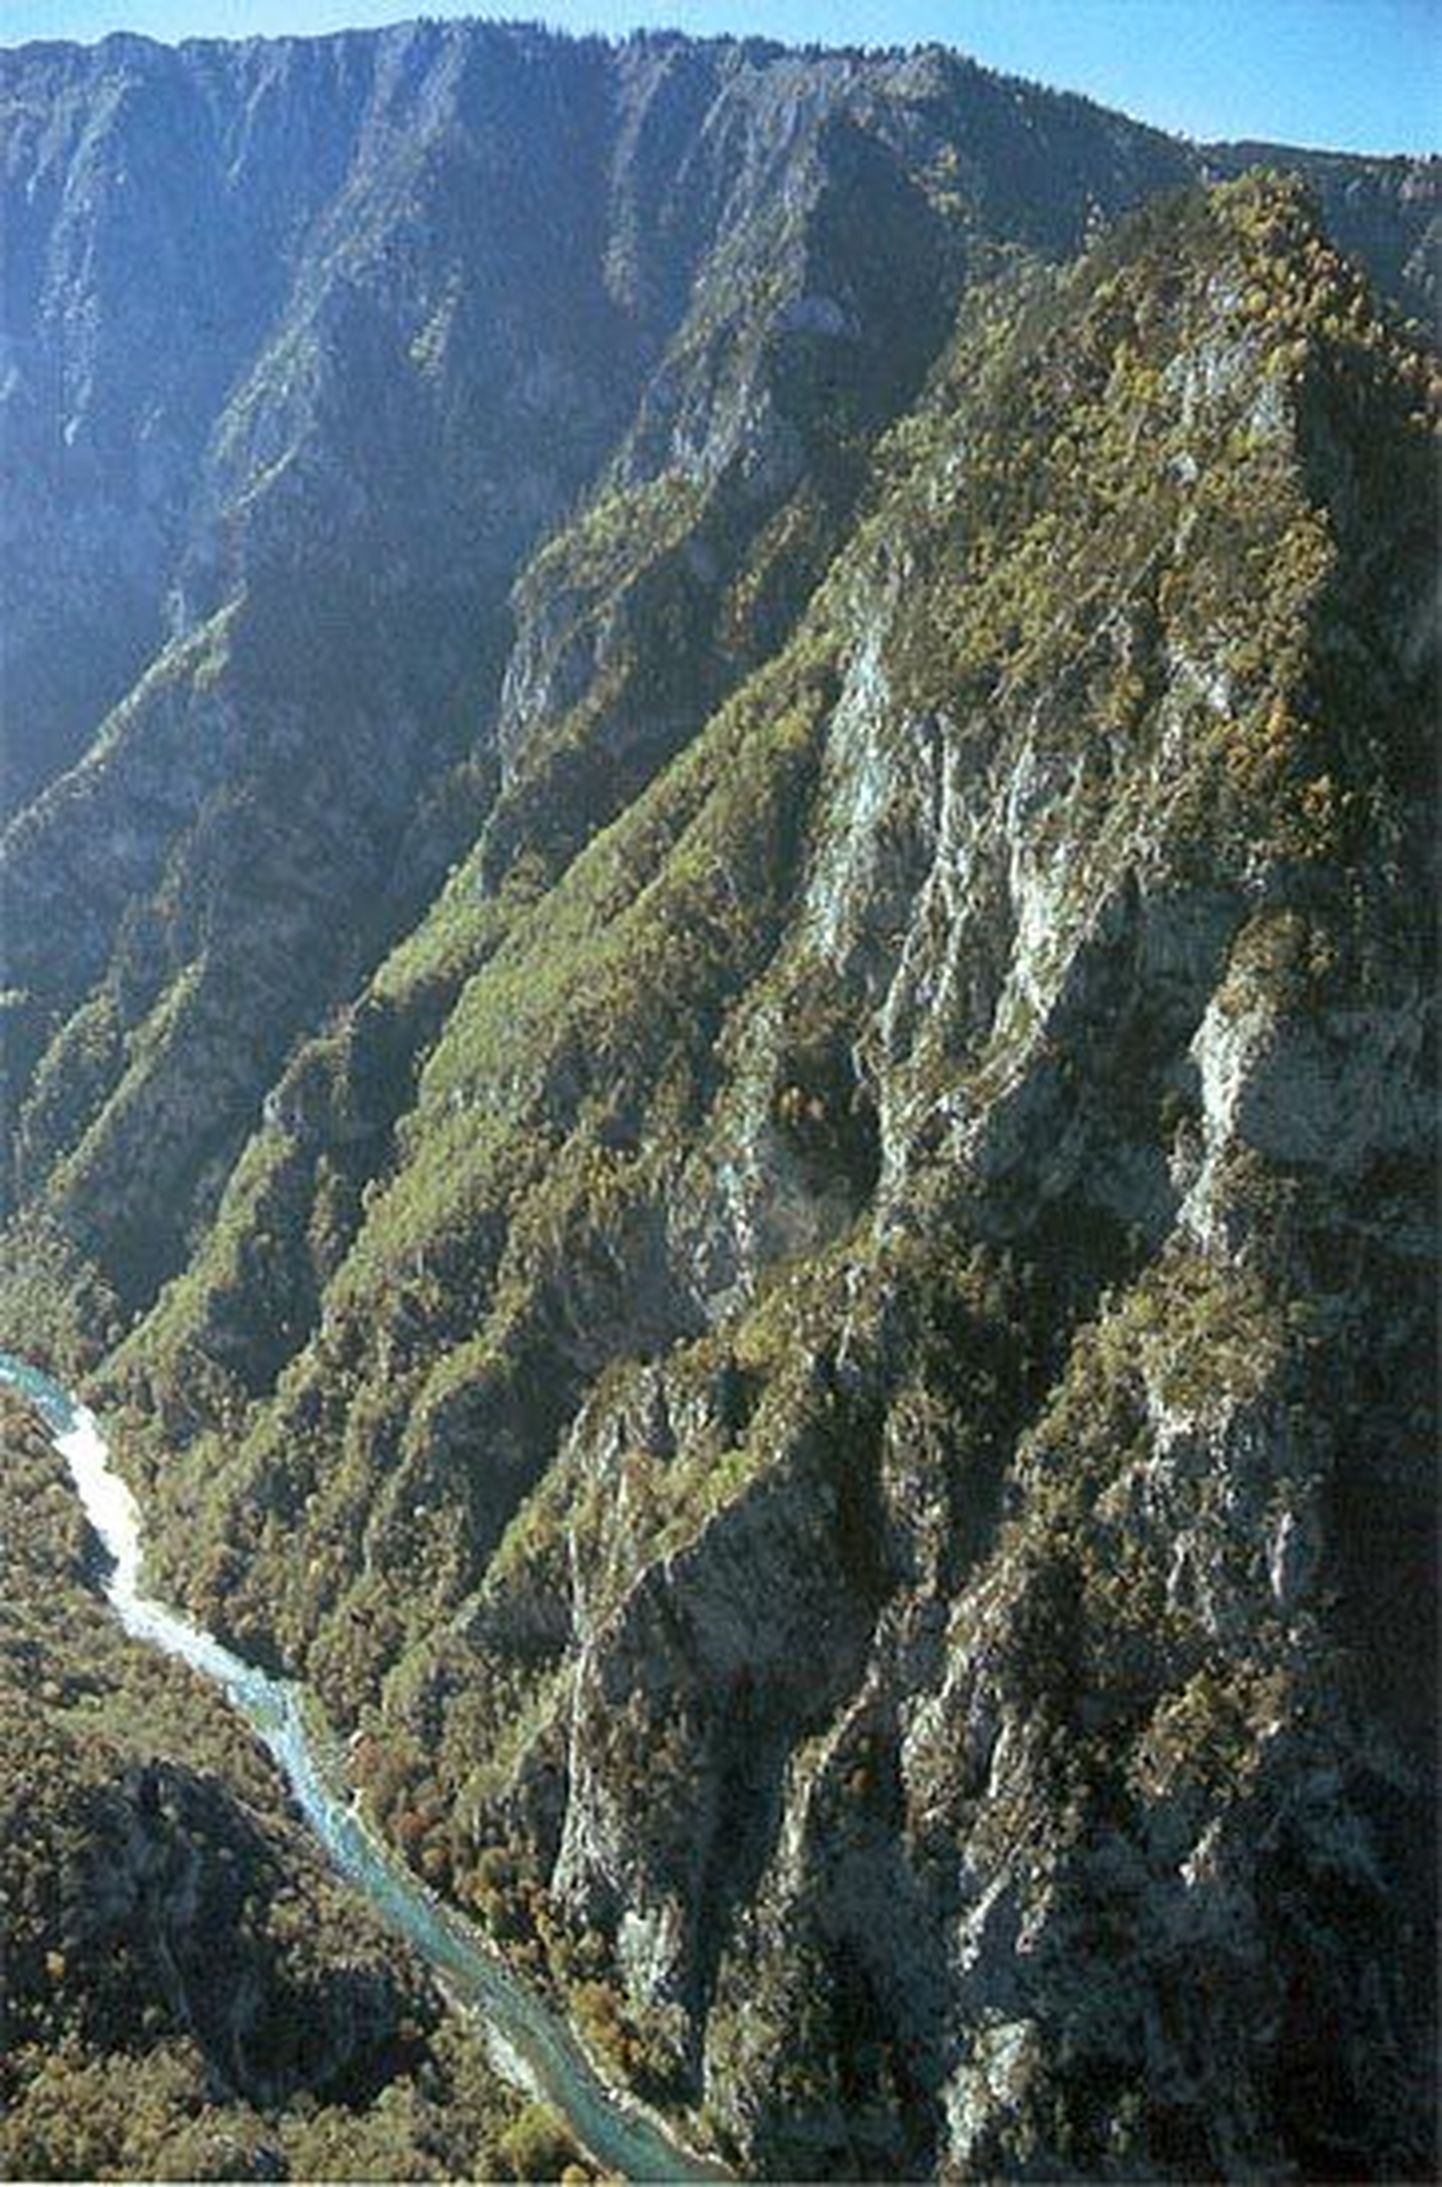 Tara jõe kanjon.